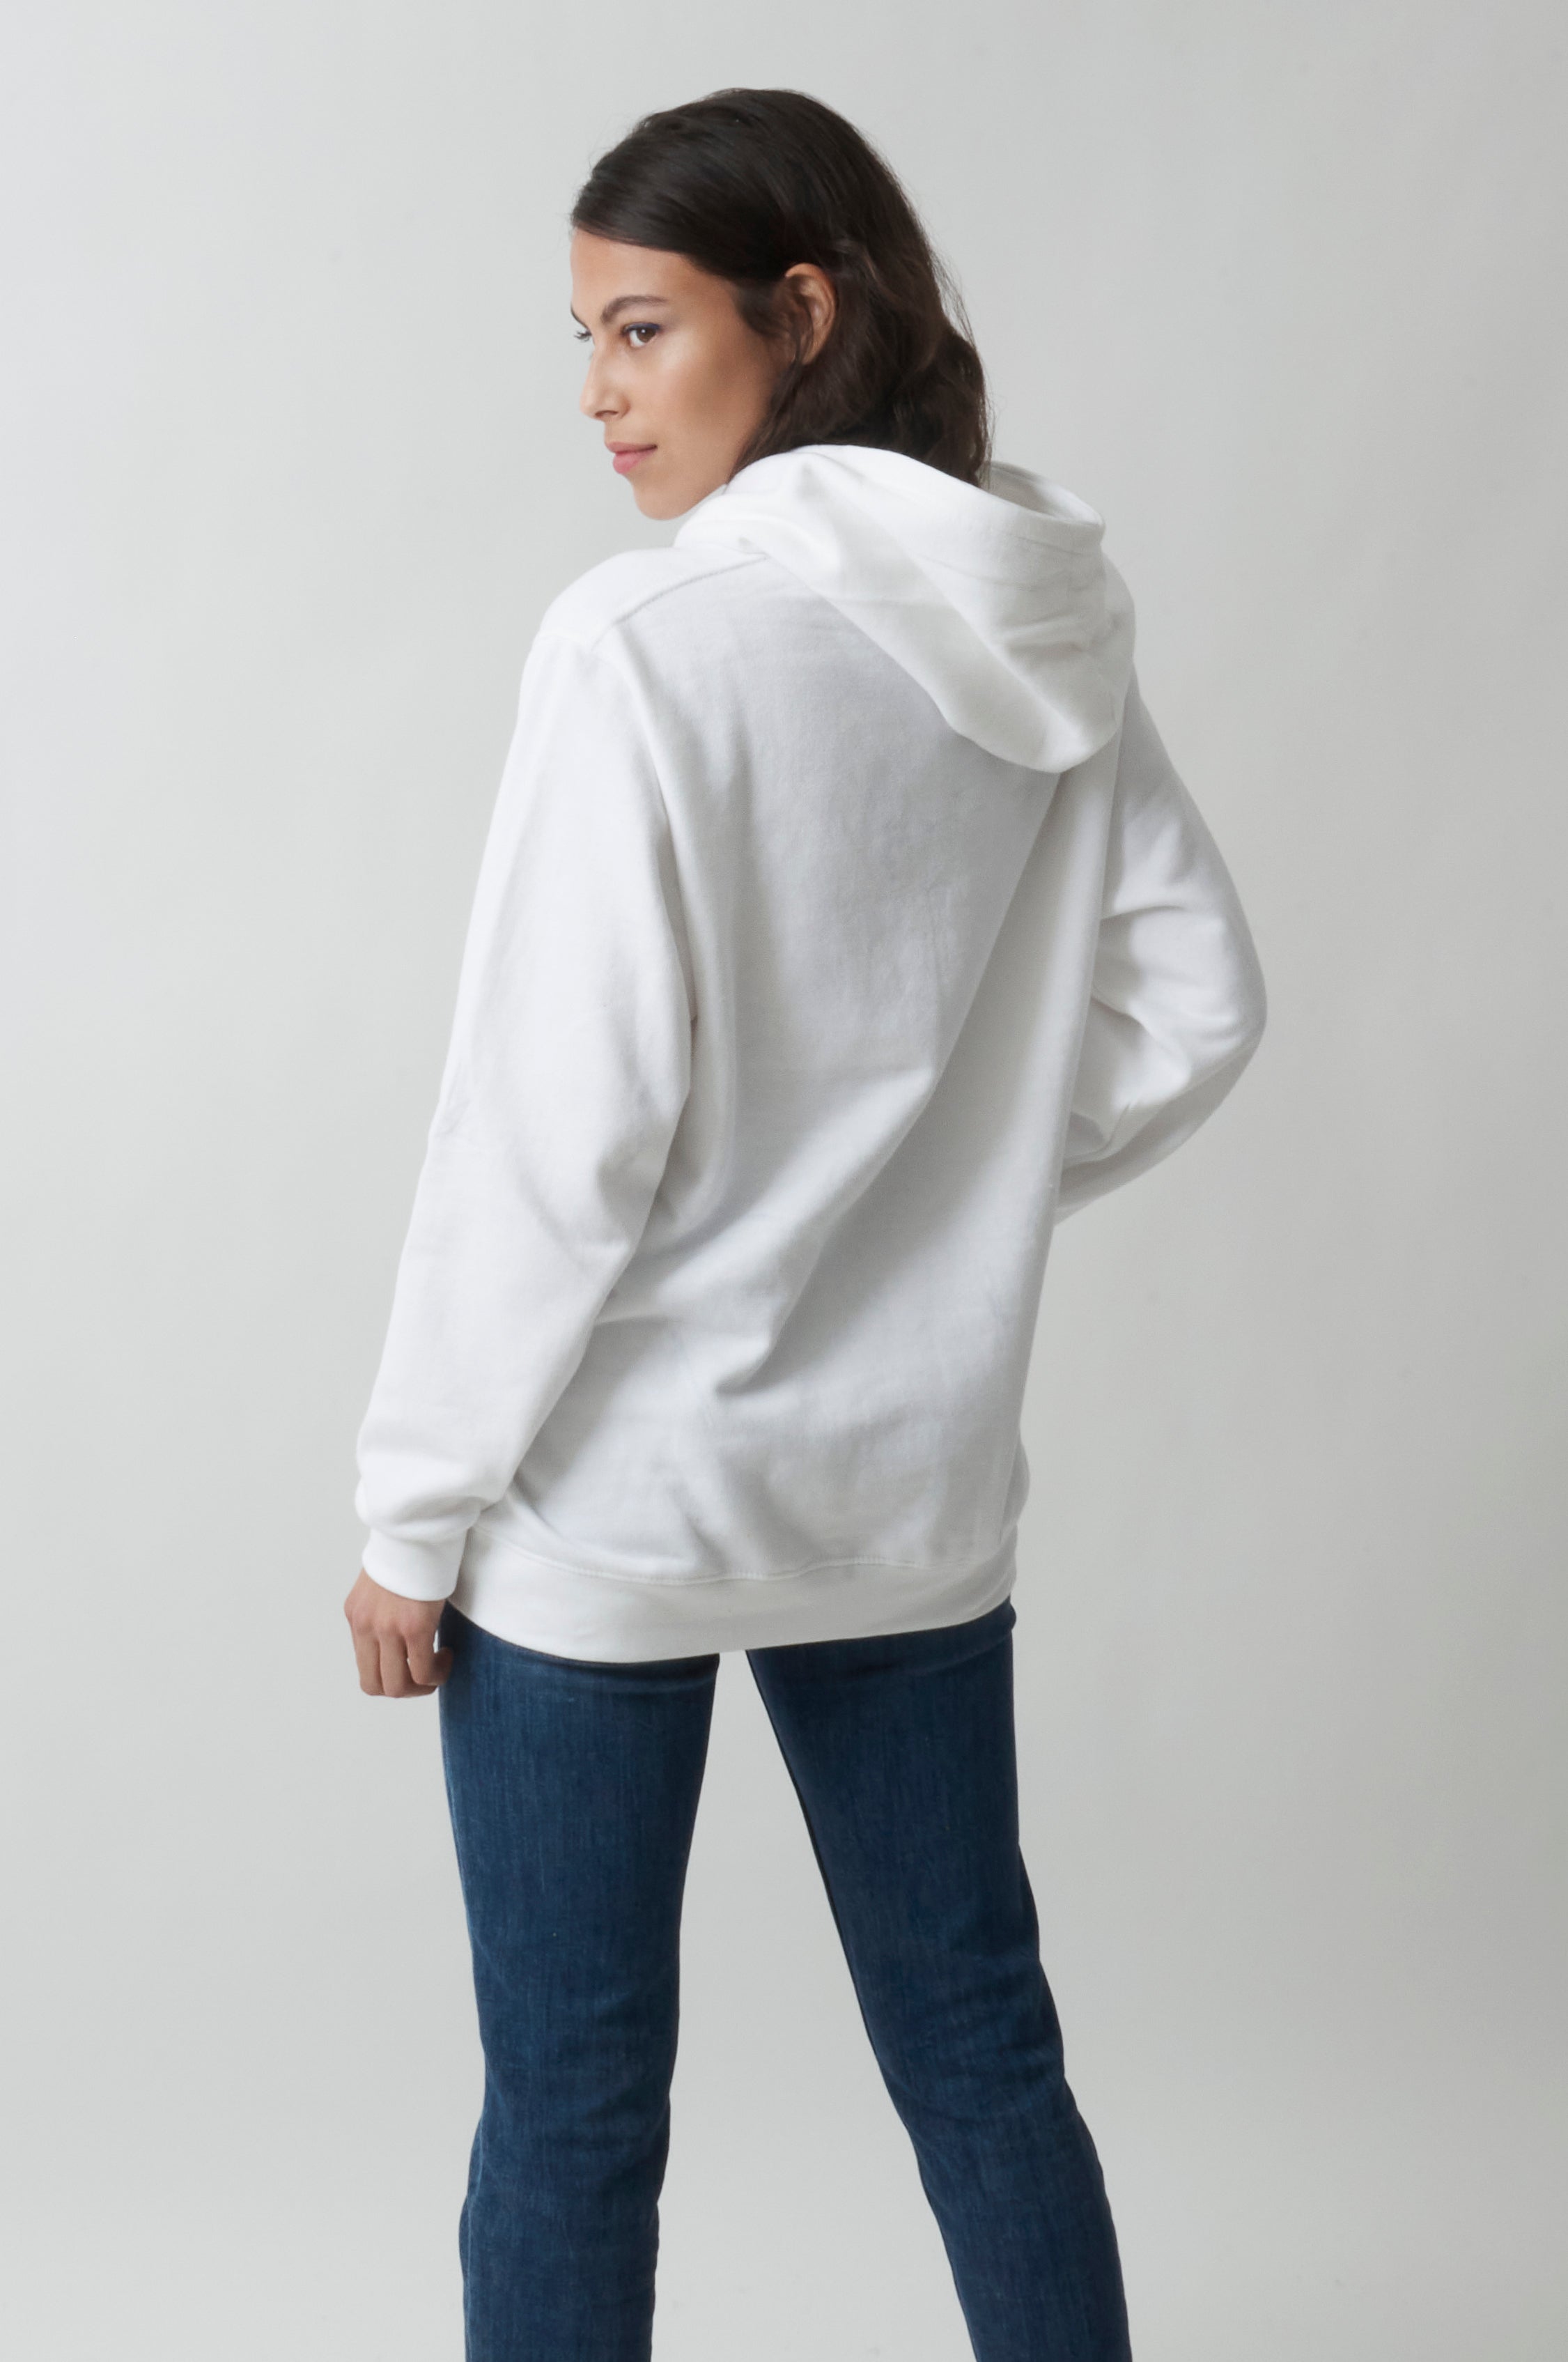 Radsow Apparel - Sweat Shirt à capuche London pour femmes White - Radsow Apparel 